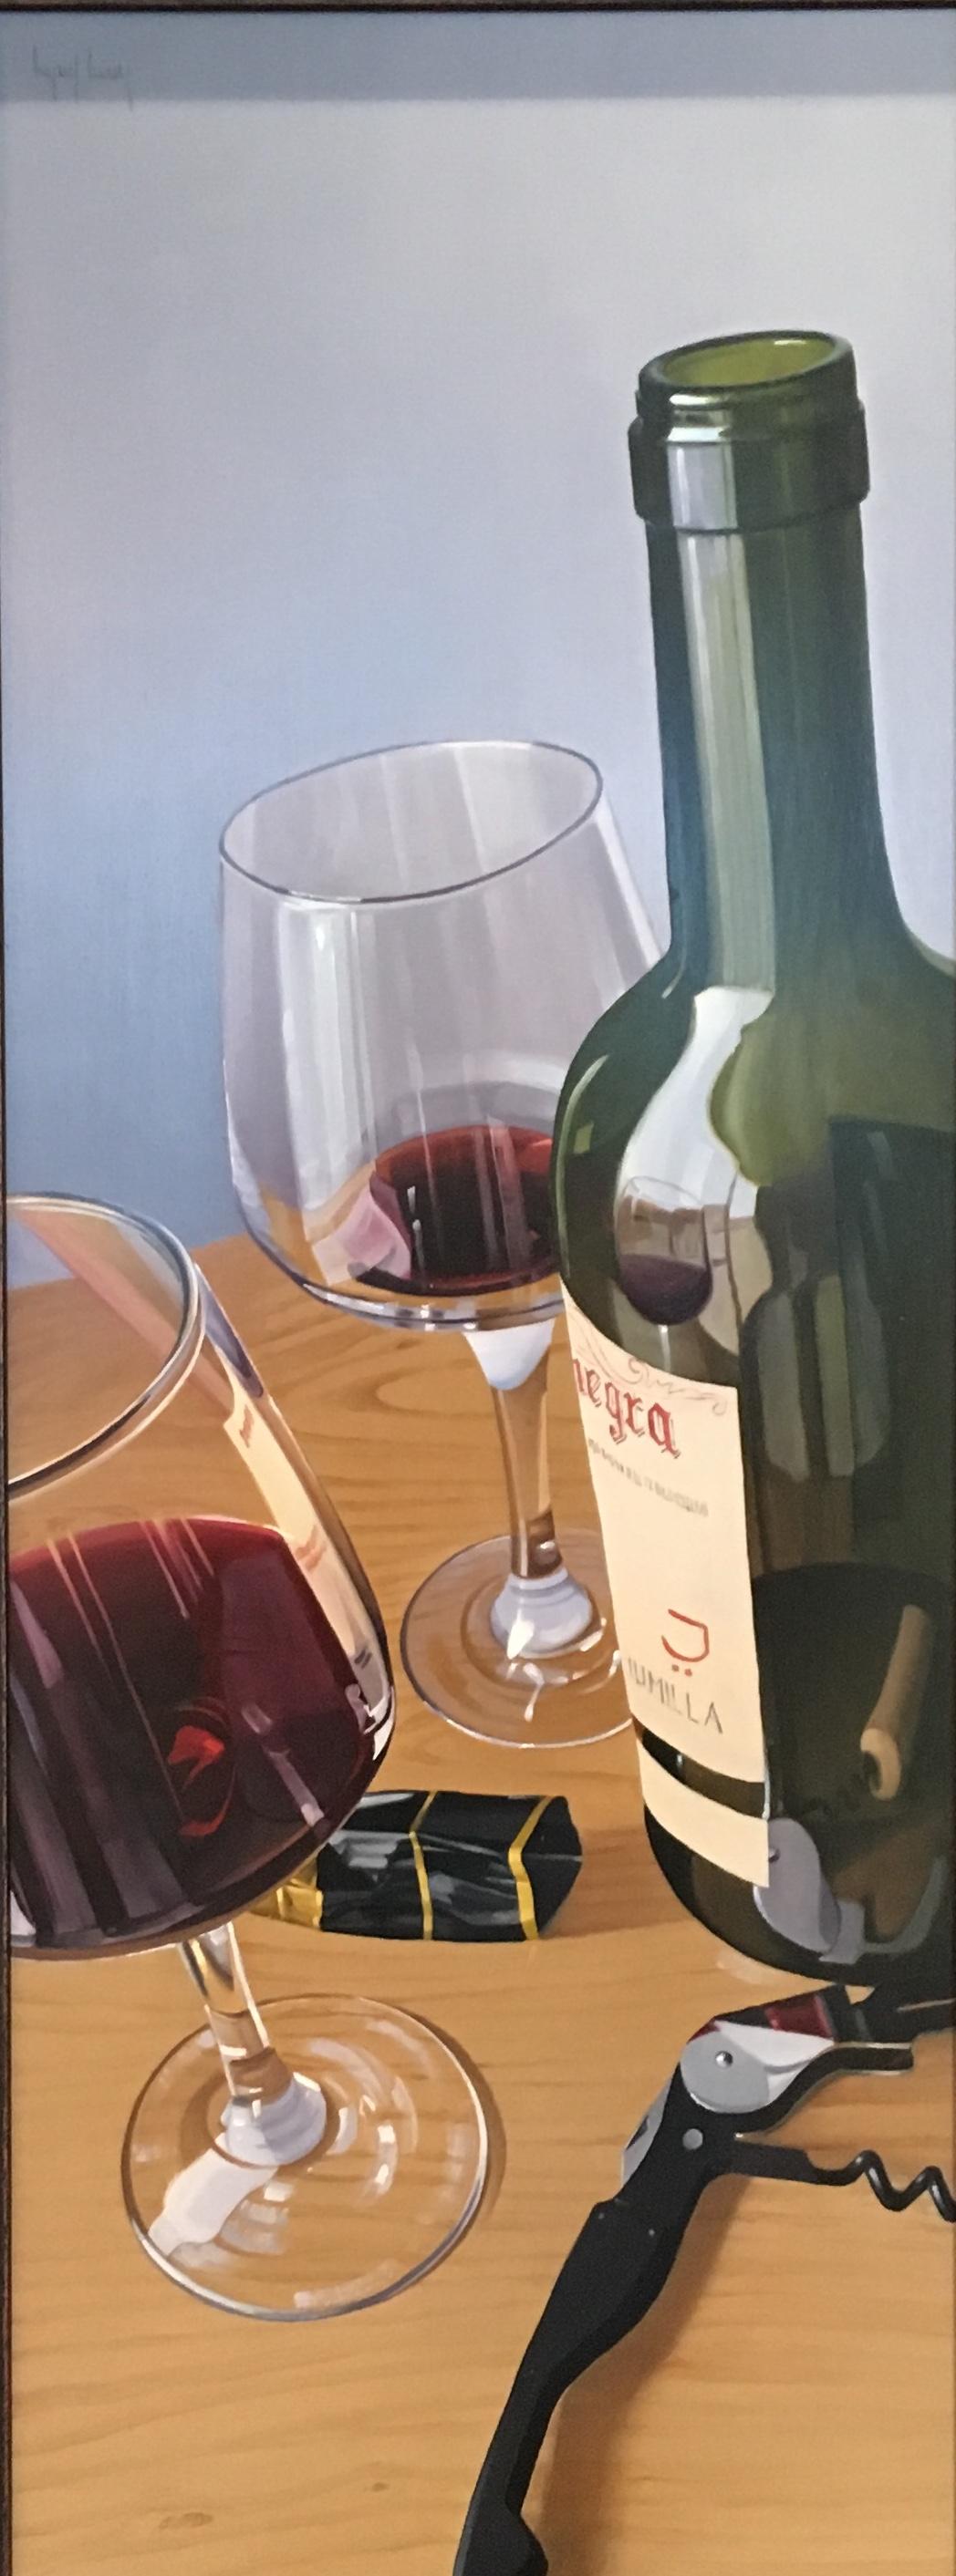 Miguel Angel Nuñez Still-Life Painting – Zeitgenössisches Stillleben mit Weingläsern und Weinflaschen, „Ein Glas oder zwei“